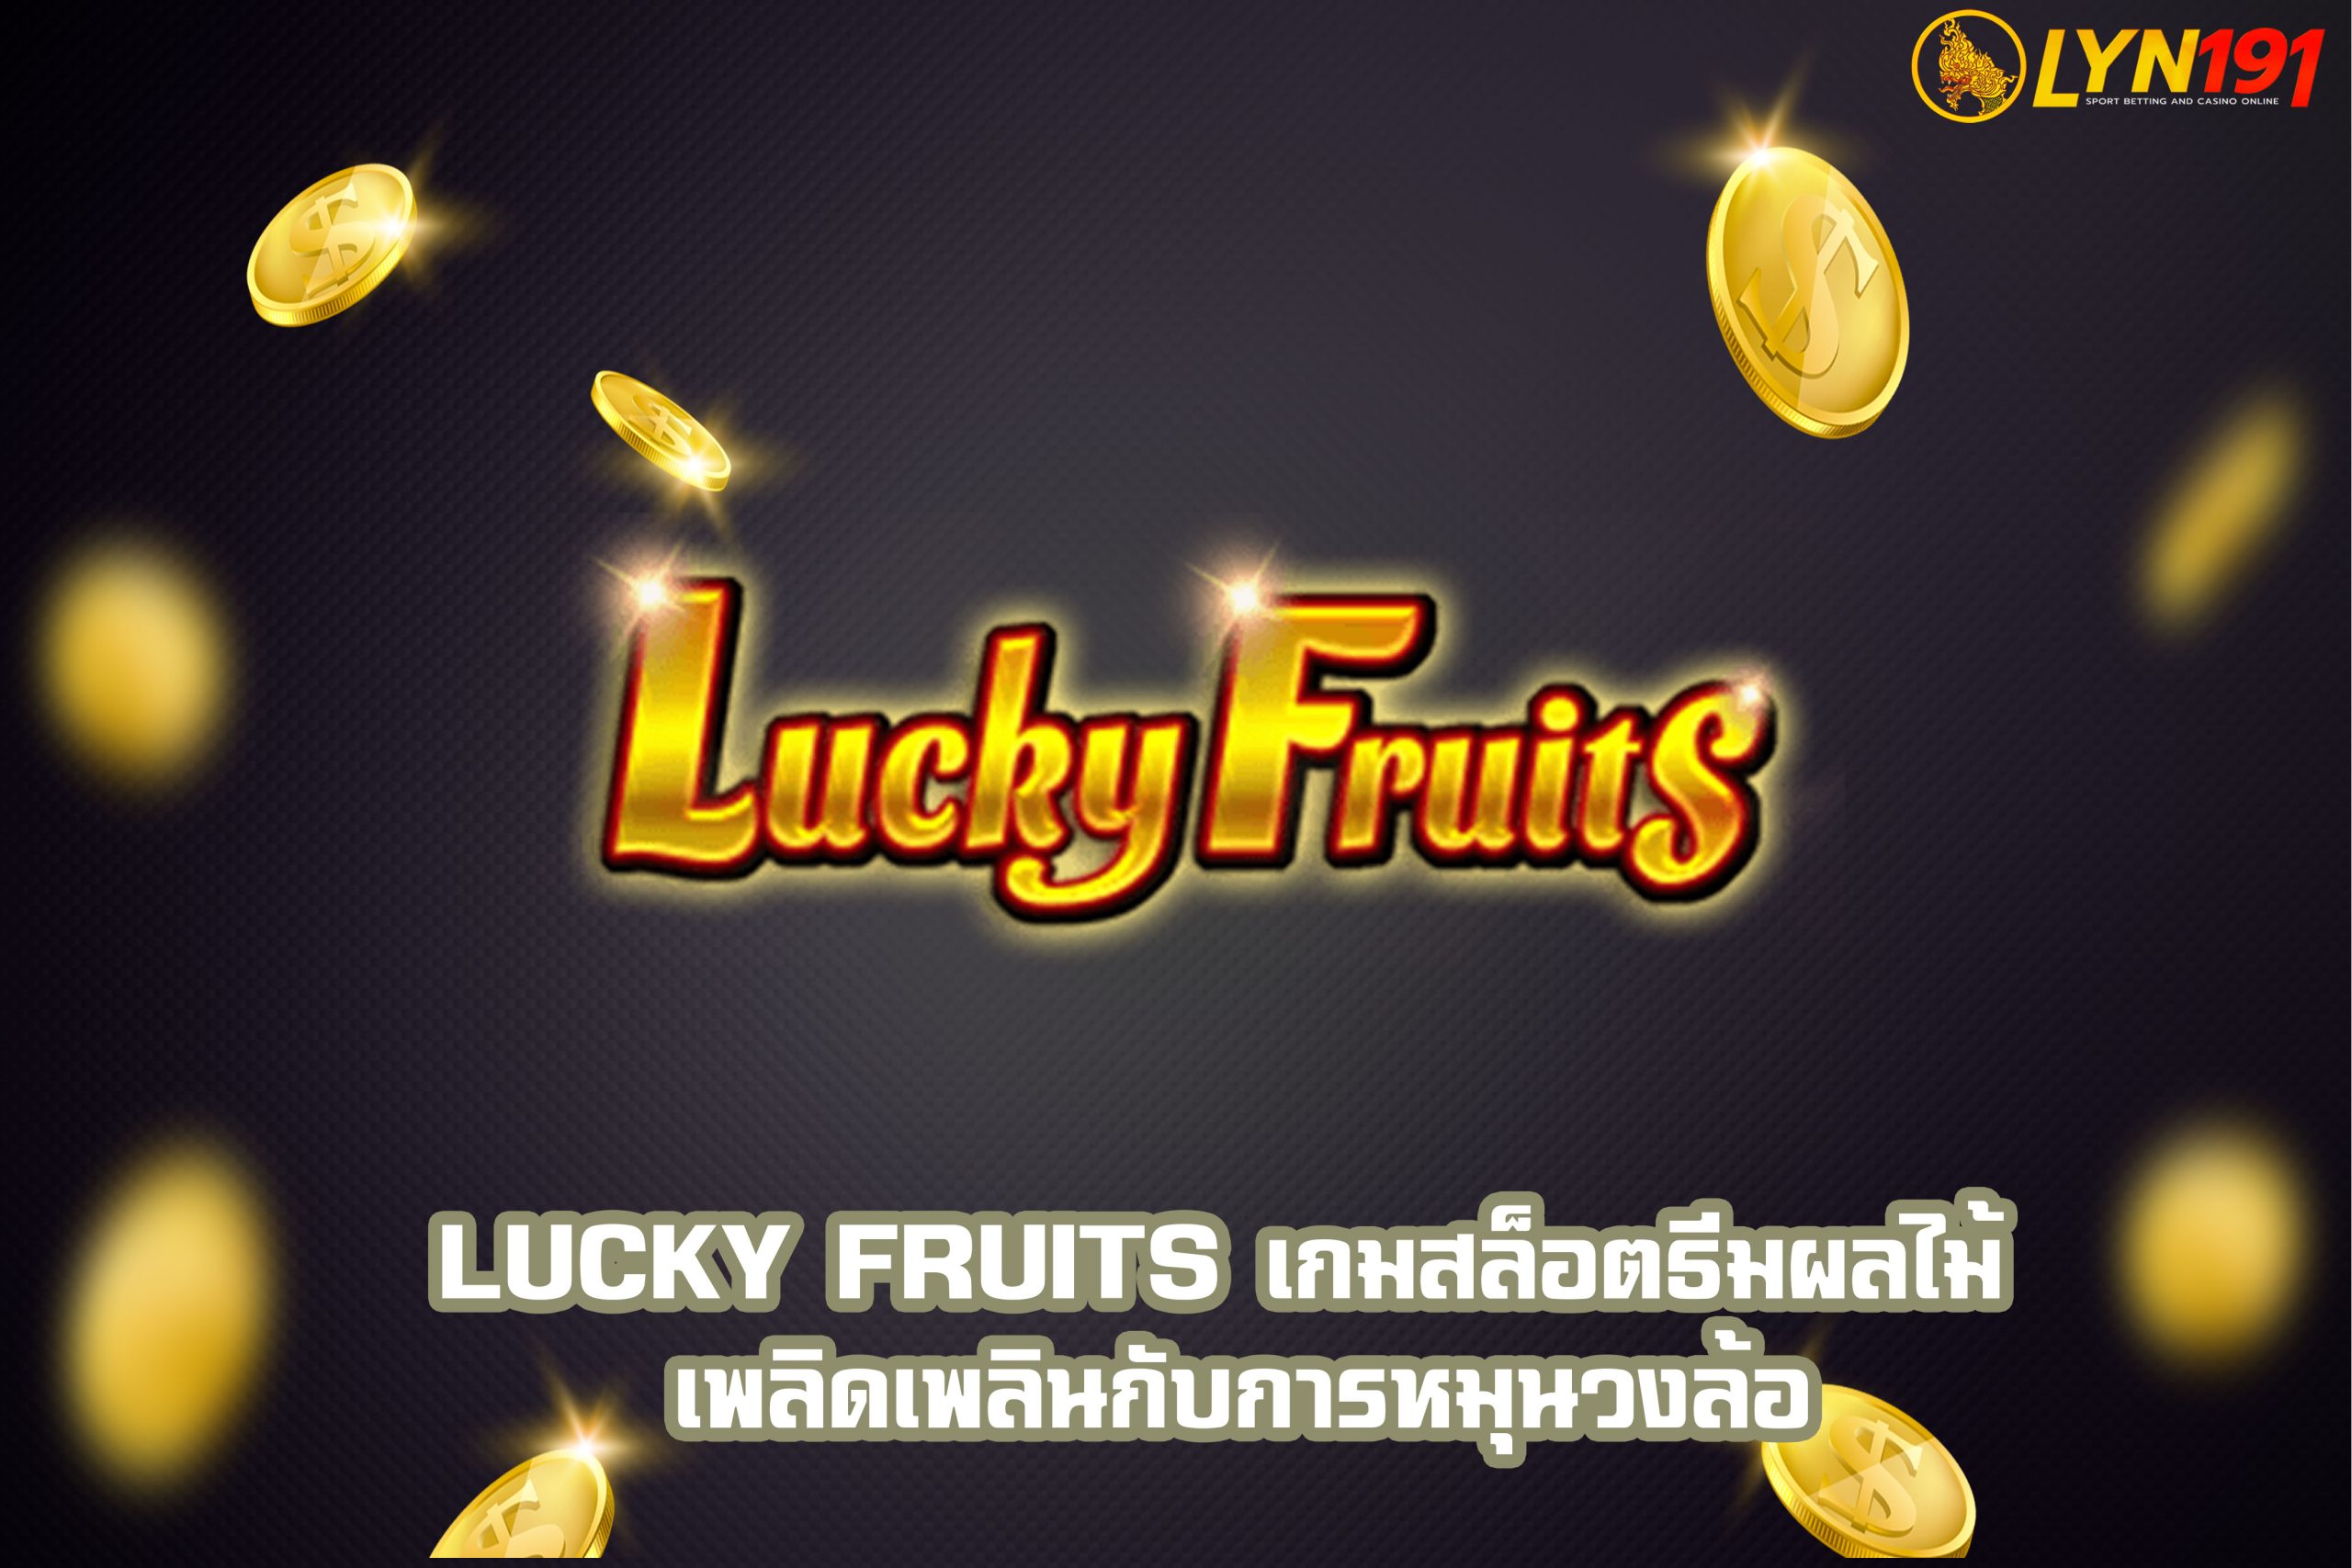 Lucky Fruits เกมสล็อตธีมผลไม้ เพลิดเพลินกับการหมุนวงล้อ